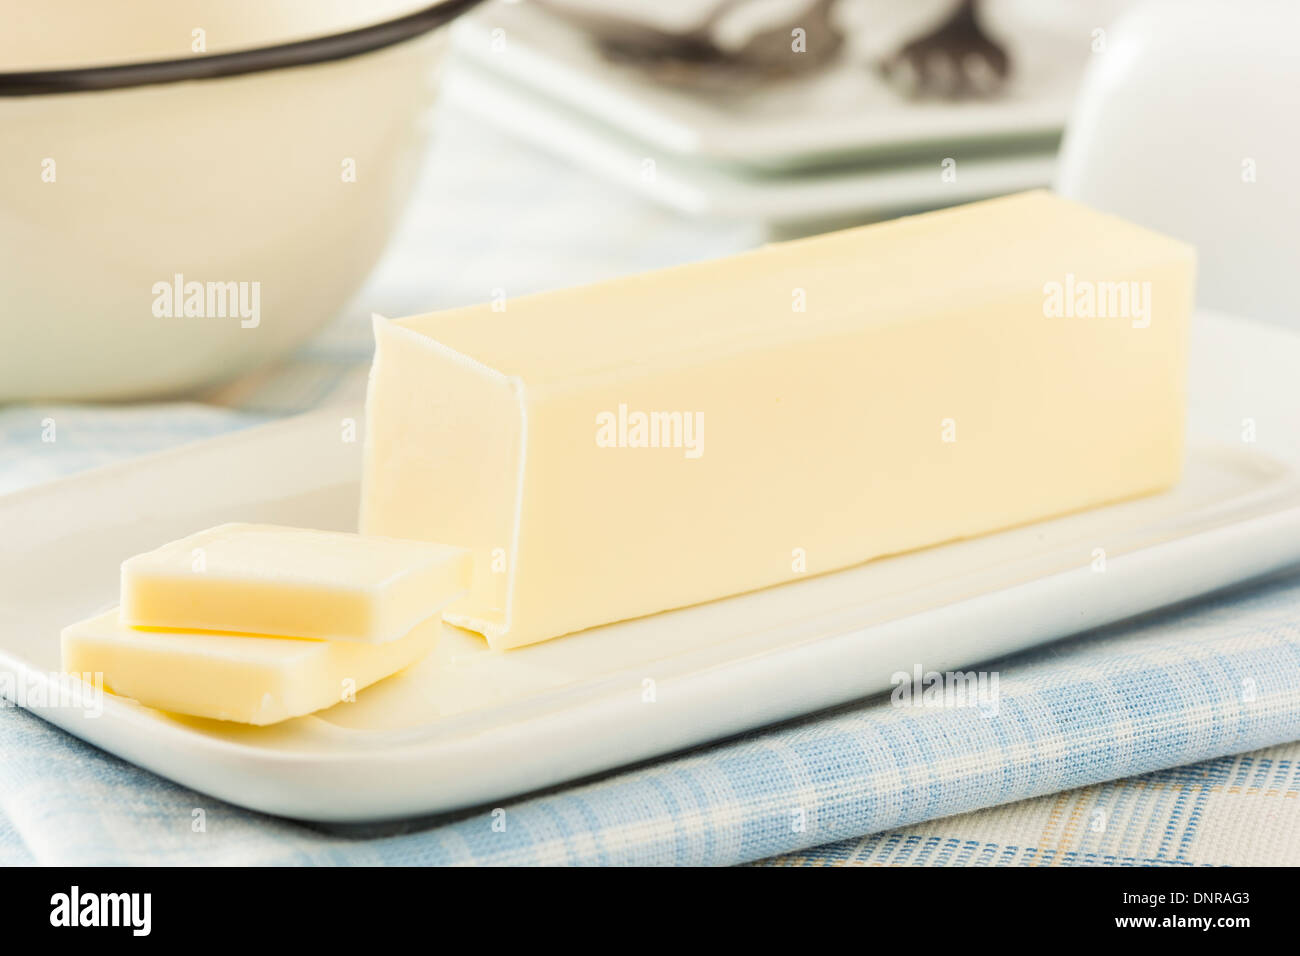 Productos lácteos orgánicos amarillo mantequilla un ingrediente para cocinar Foto de stock